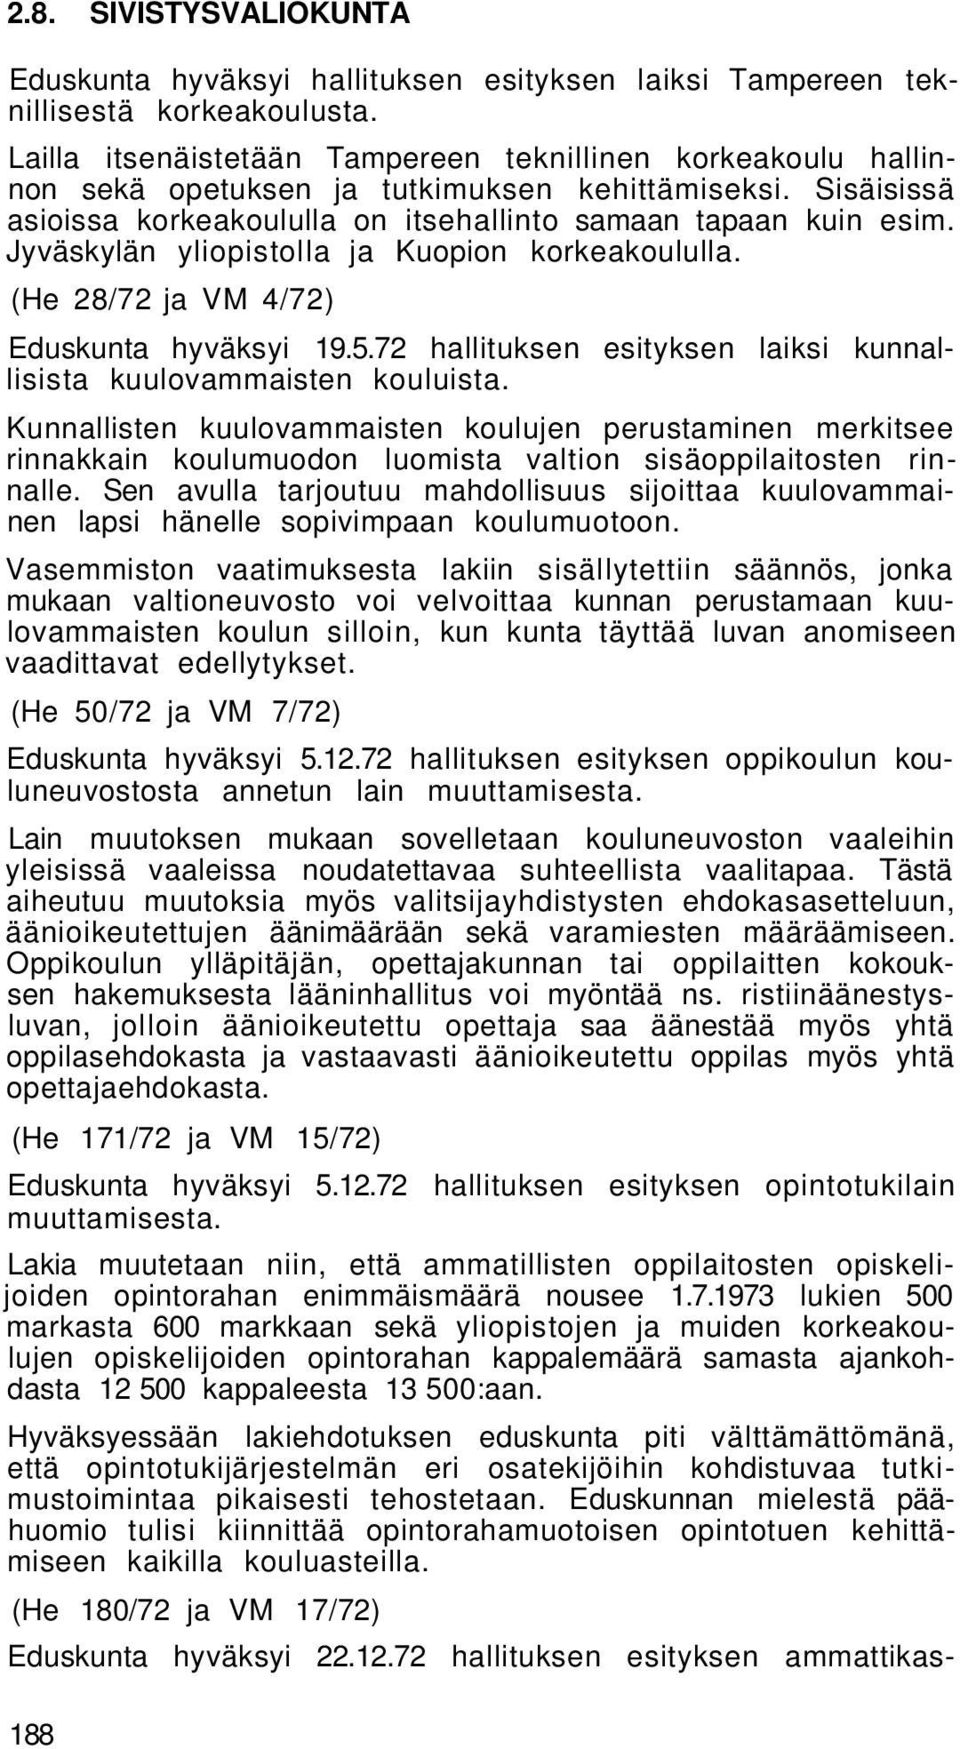 Jyväskylän yliopistolla ja Kuopion korkeakoululla. (He 28/72 ja VM 4/72) Eduskunta hyväksyi 19.5.72 hallituksen esityksen laiksi kunnallisista kuulovammaisten kouluista.